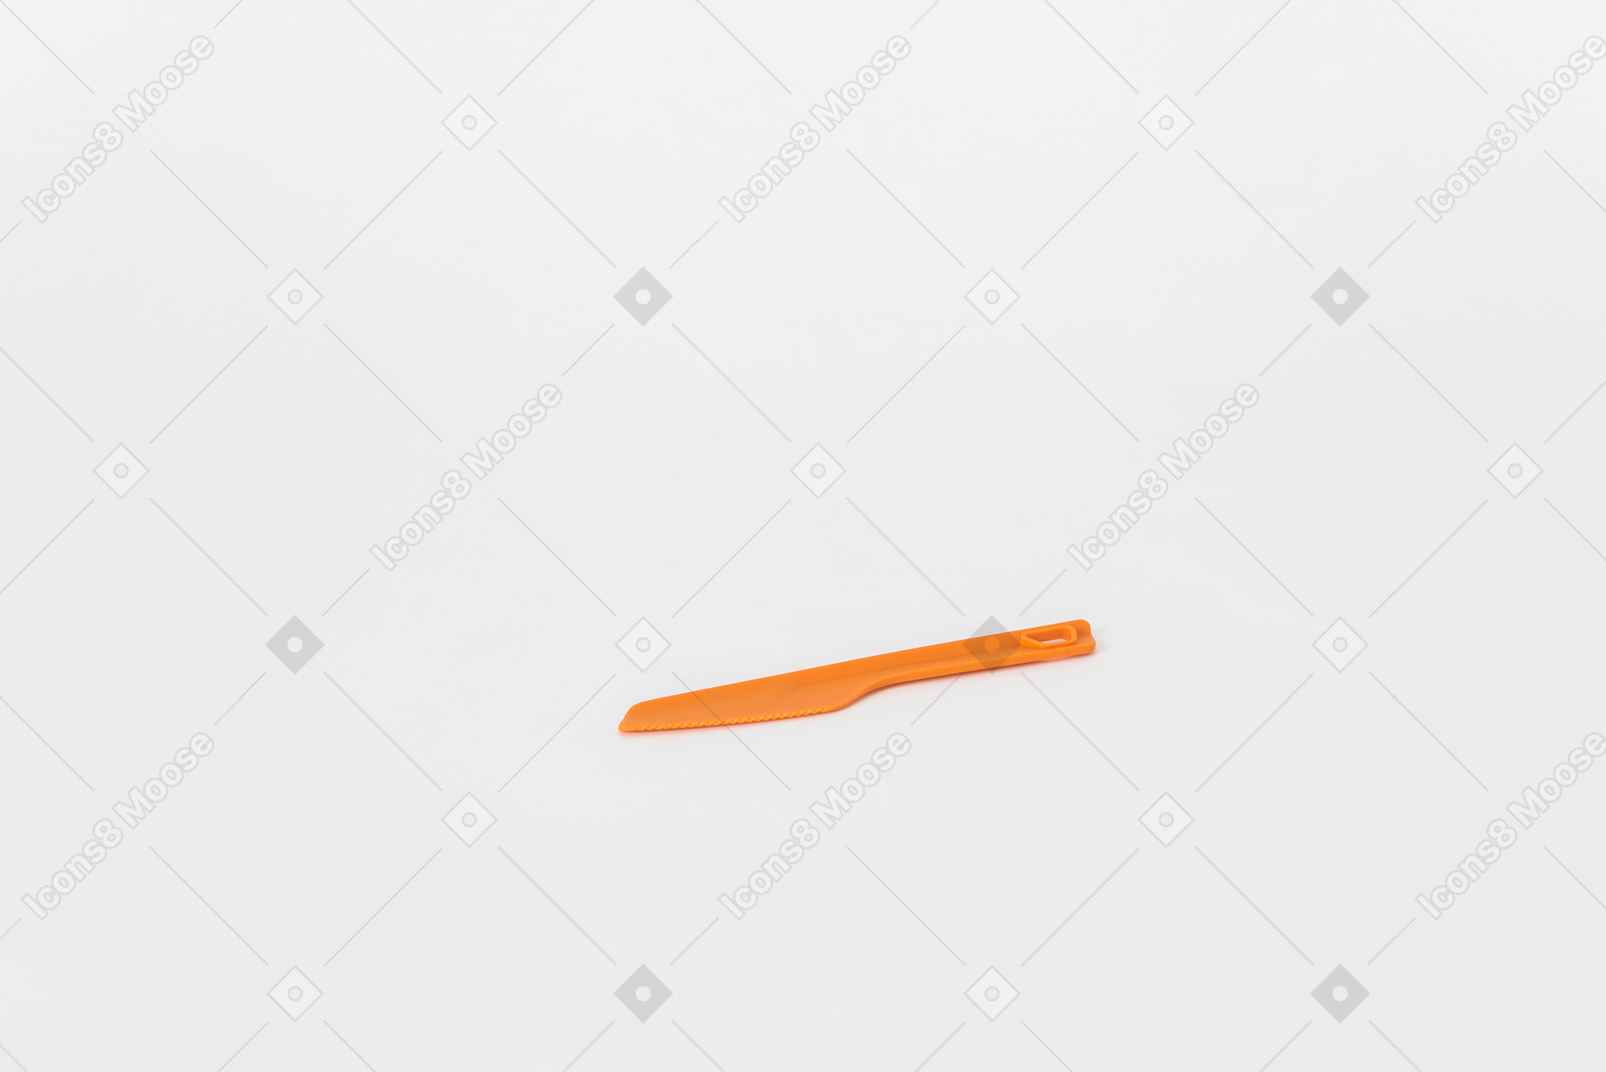 Naranja cuchillo de cocina de plástico sobre un fondo blanco.